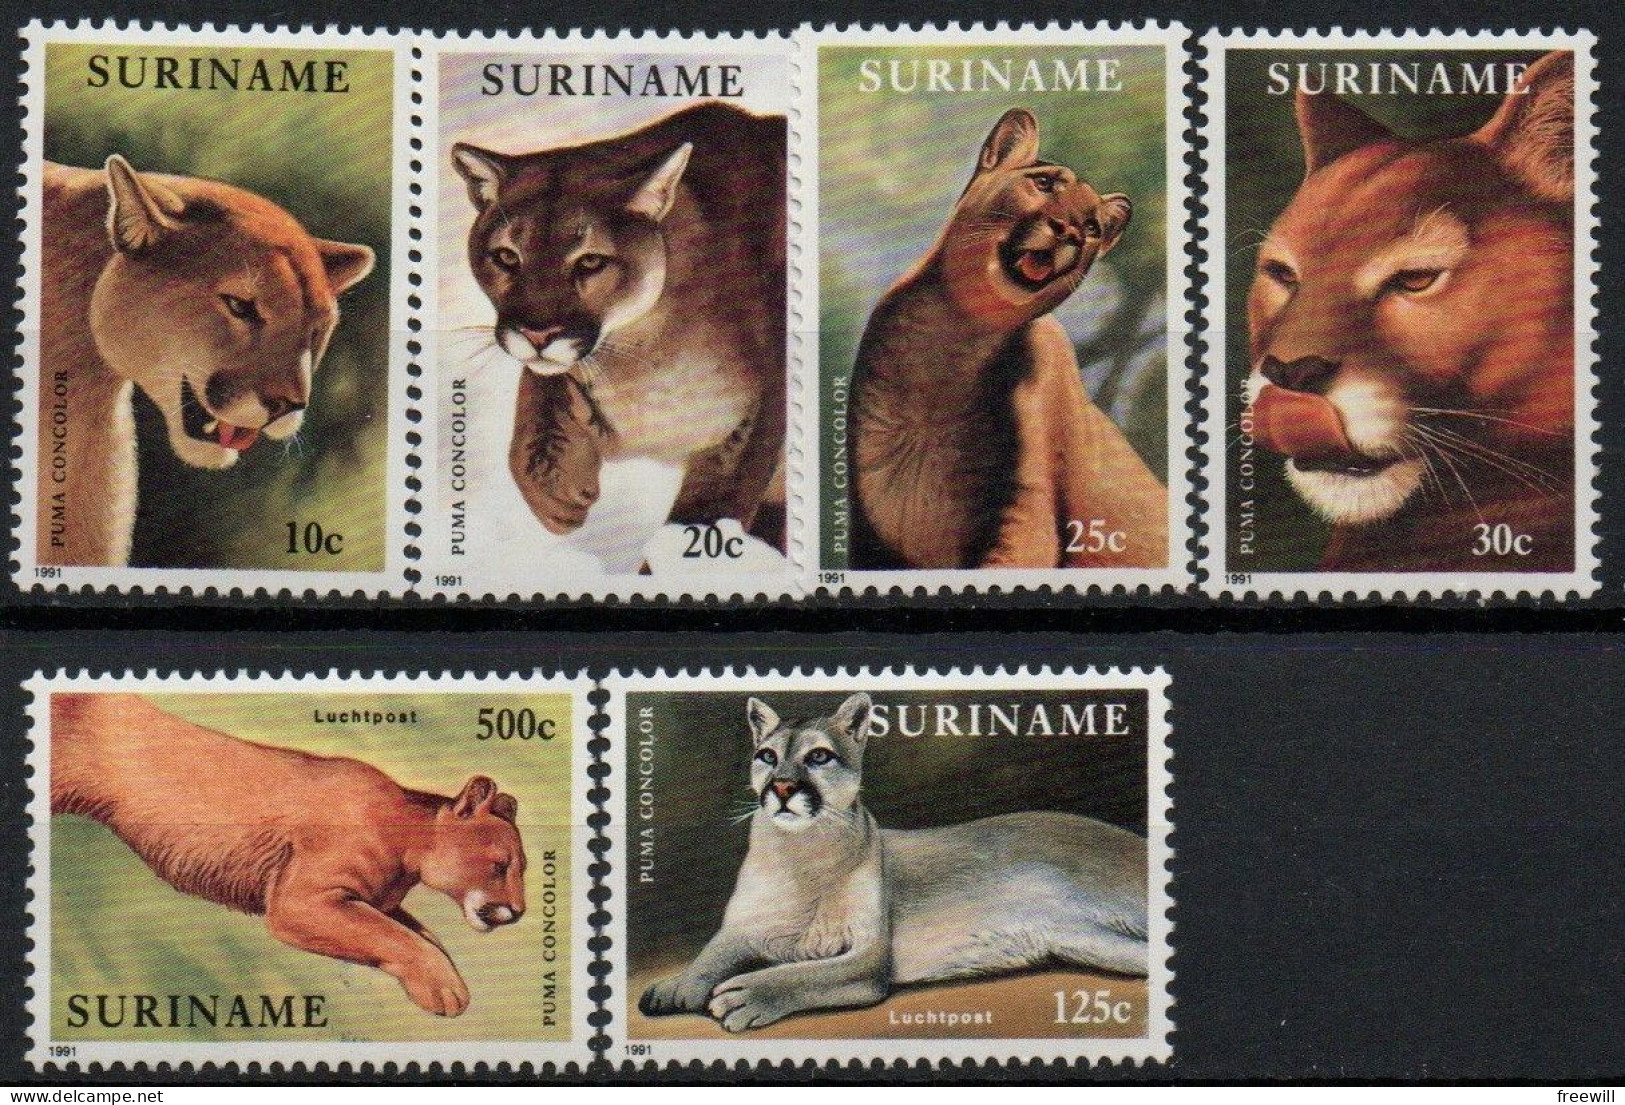 Surinam Animaux-Animals-Dieren XXX 1991 - Surinam